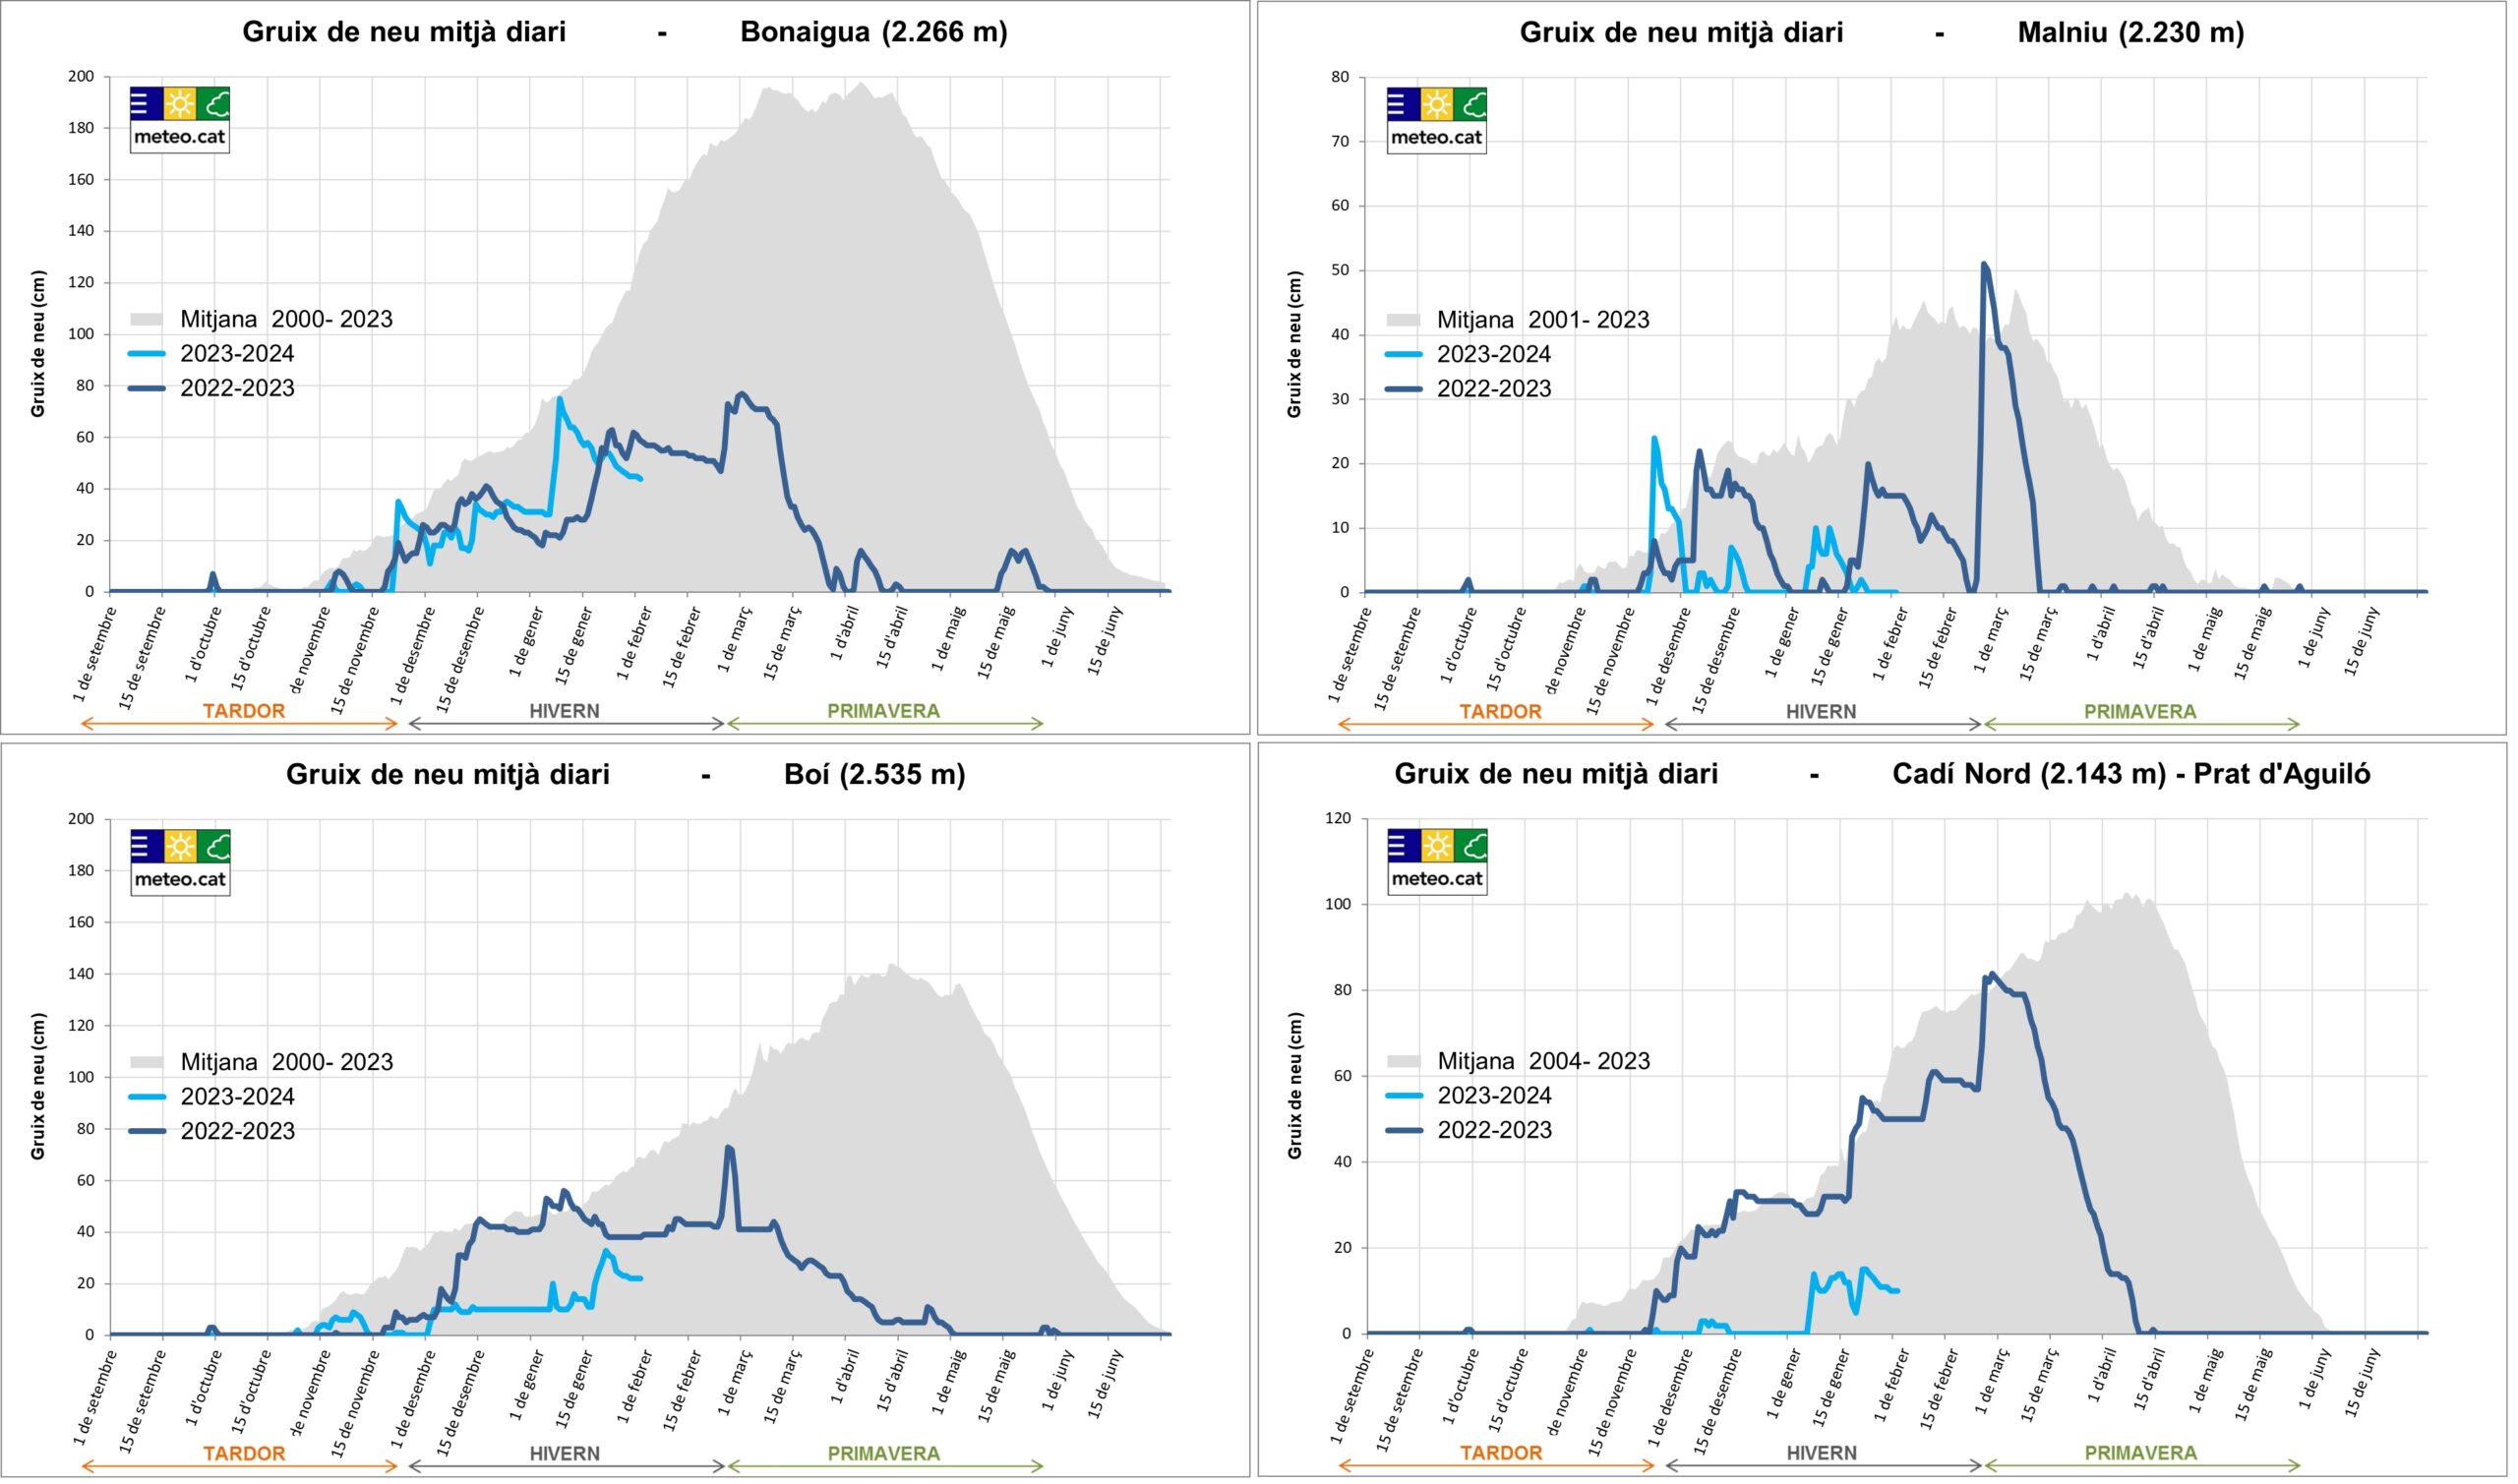 Gràfiques de l’evolució del gruix de neu d’enguany, de l’any passat i de la mitjana al llarg de la temporada a les estacions meteorològiques automàtiques de Bonaigua, Malniu, Boí i Cadí Nord.